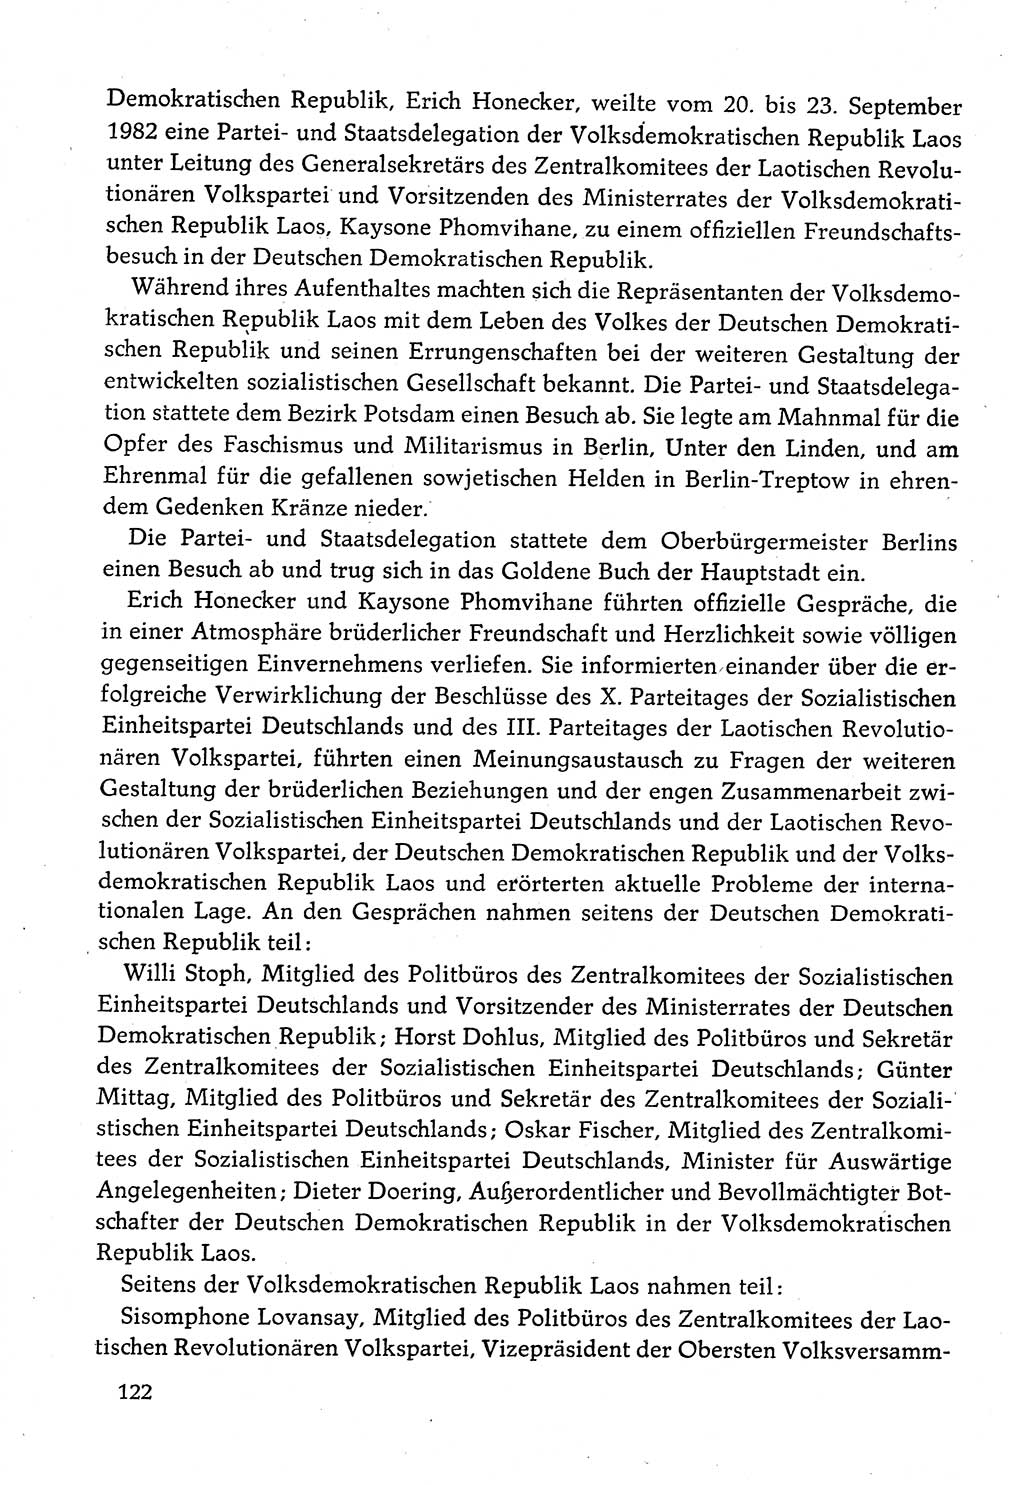 Dokumente der Sozialistischen Einheitspartei Deutschlands (SED) [Deutsche Demokratische Republik (DDR)] 1982-1983, Seite 122 (Dok. SED DDR 1982-1983, S. 122)